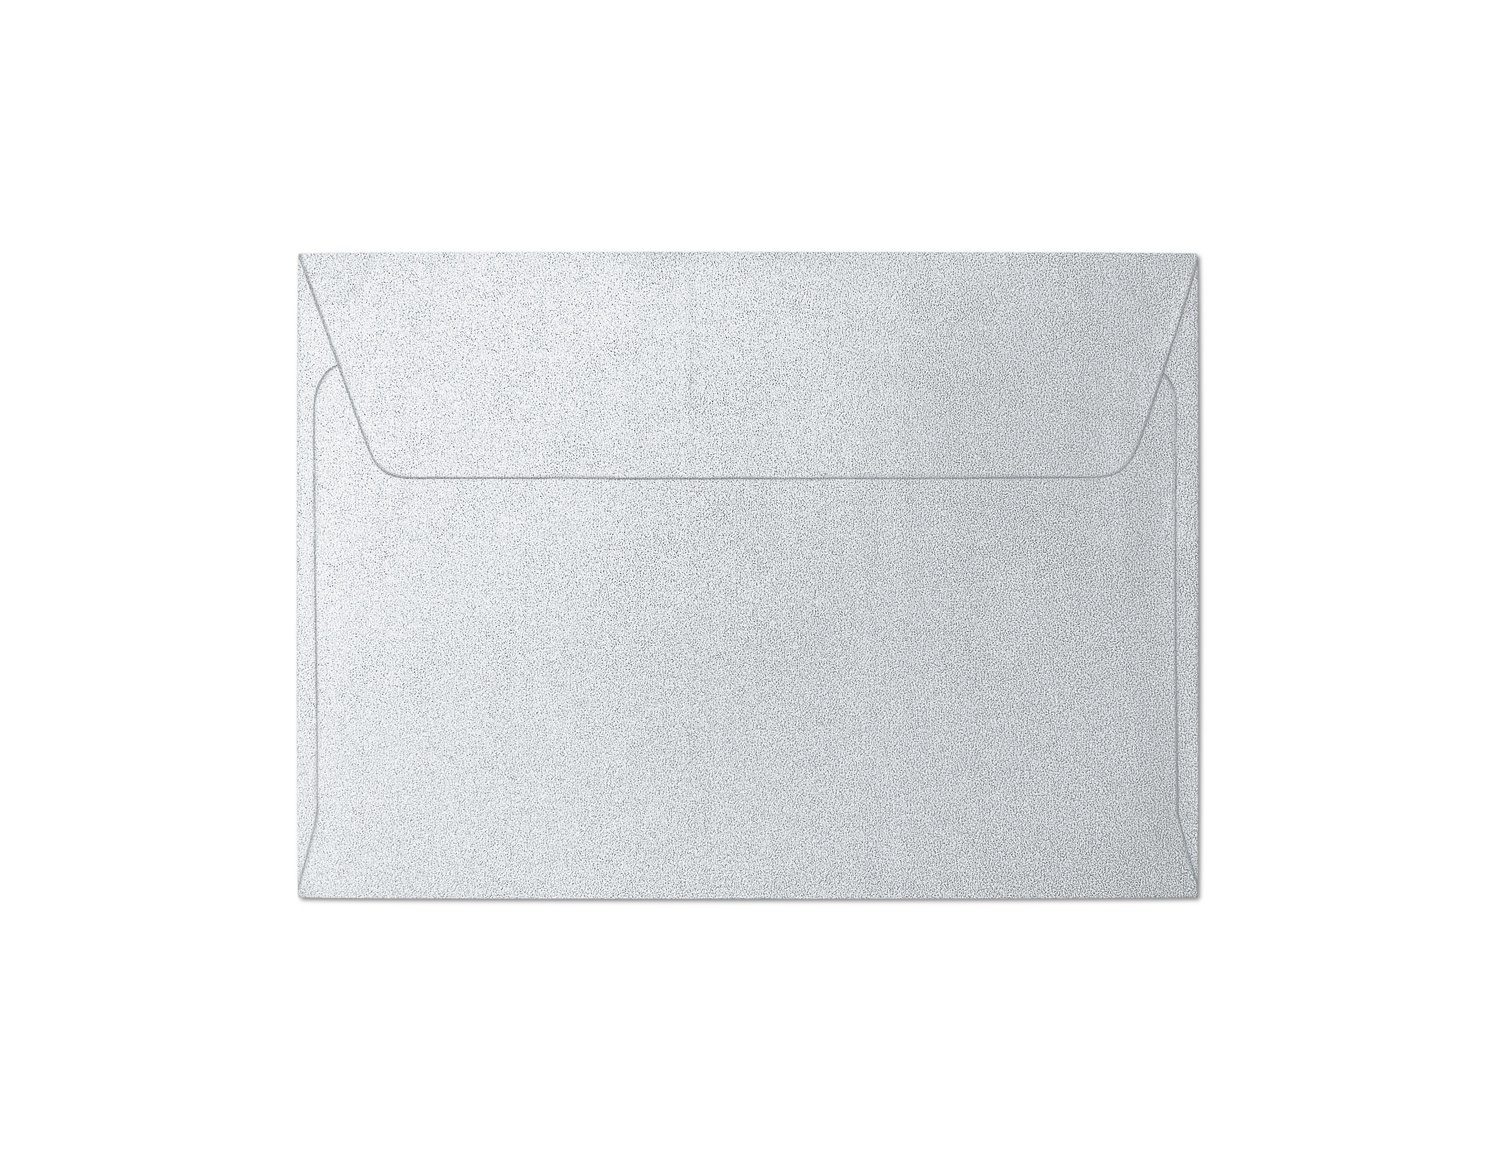 Galeria Papieru obálky C6 Pearl stříbrná 120g, 10ks